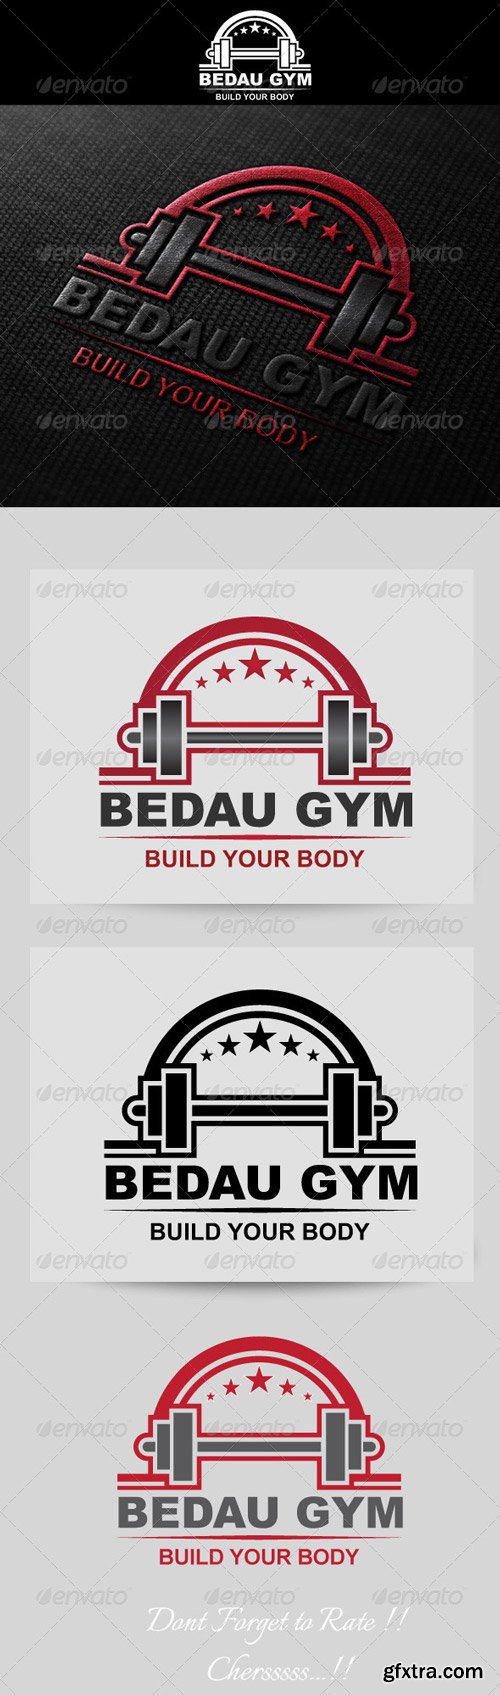 GraphicRiver - Fitness / Gym Logo Template - 4686999